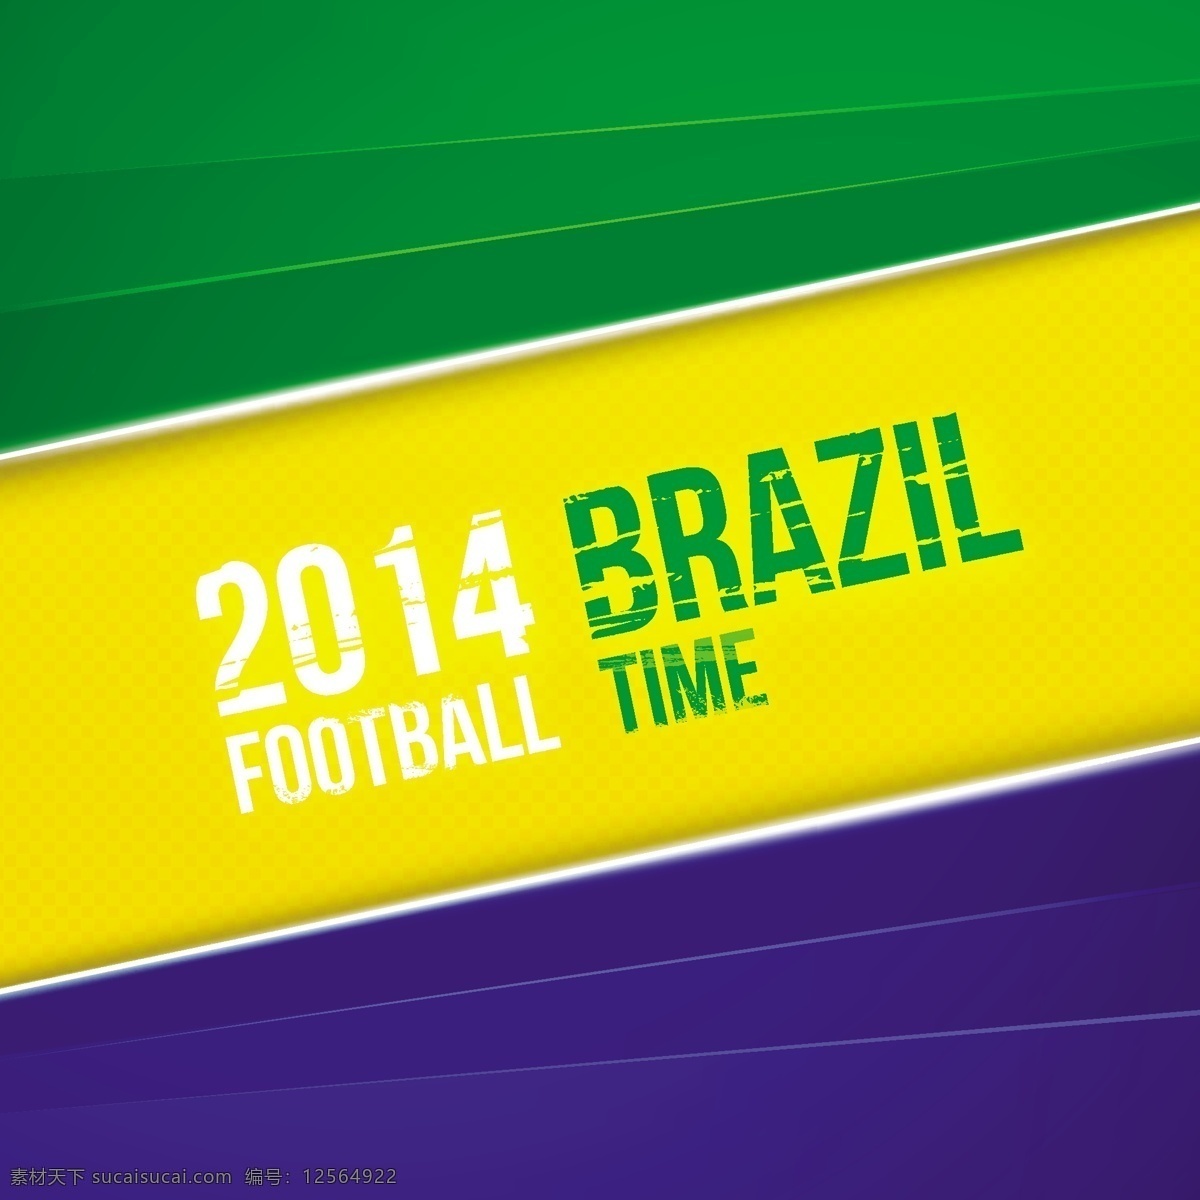 2014 巴西 足球 世界杯 海报 模板下载 巴西国旗 足球比赛 球赛 体育运动 生活百科 矢量素材 黄色